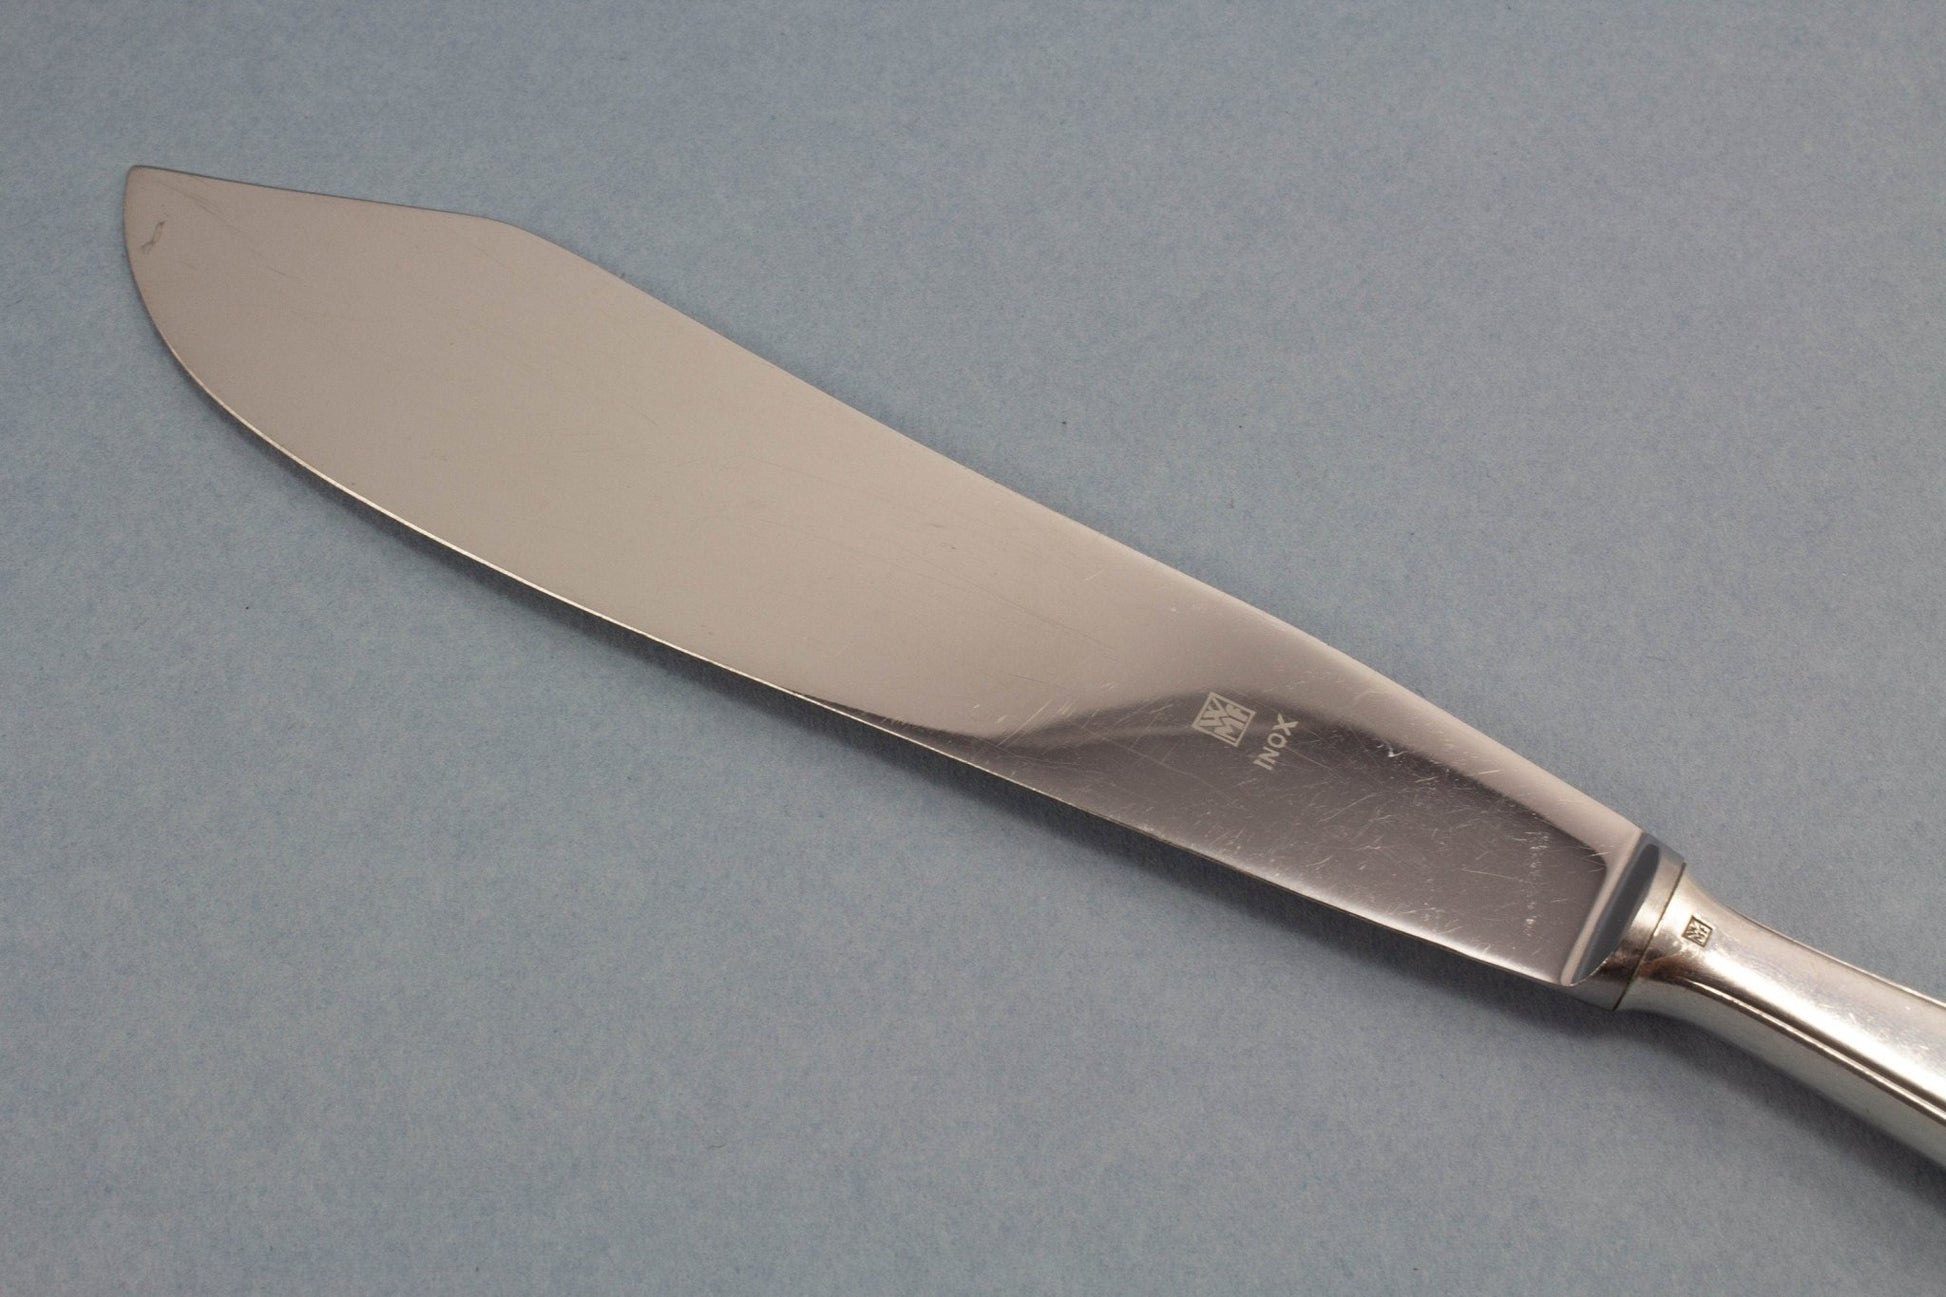 Versilbertes Tortenmesser von WMF, Vintage Messer für die Hochzeitstorte, WMF 2900 - Löffelland